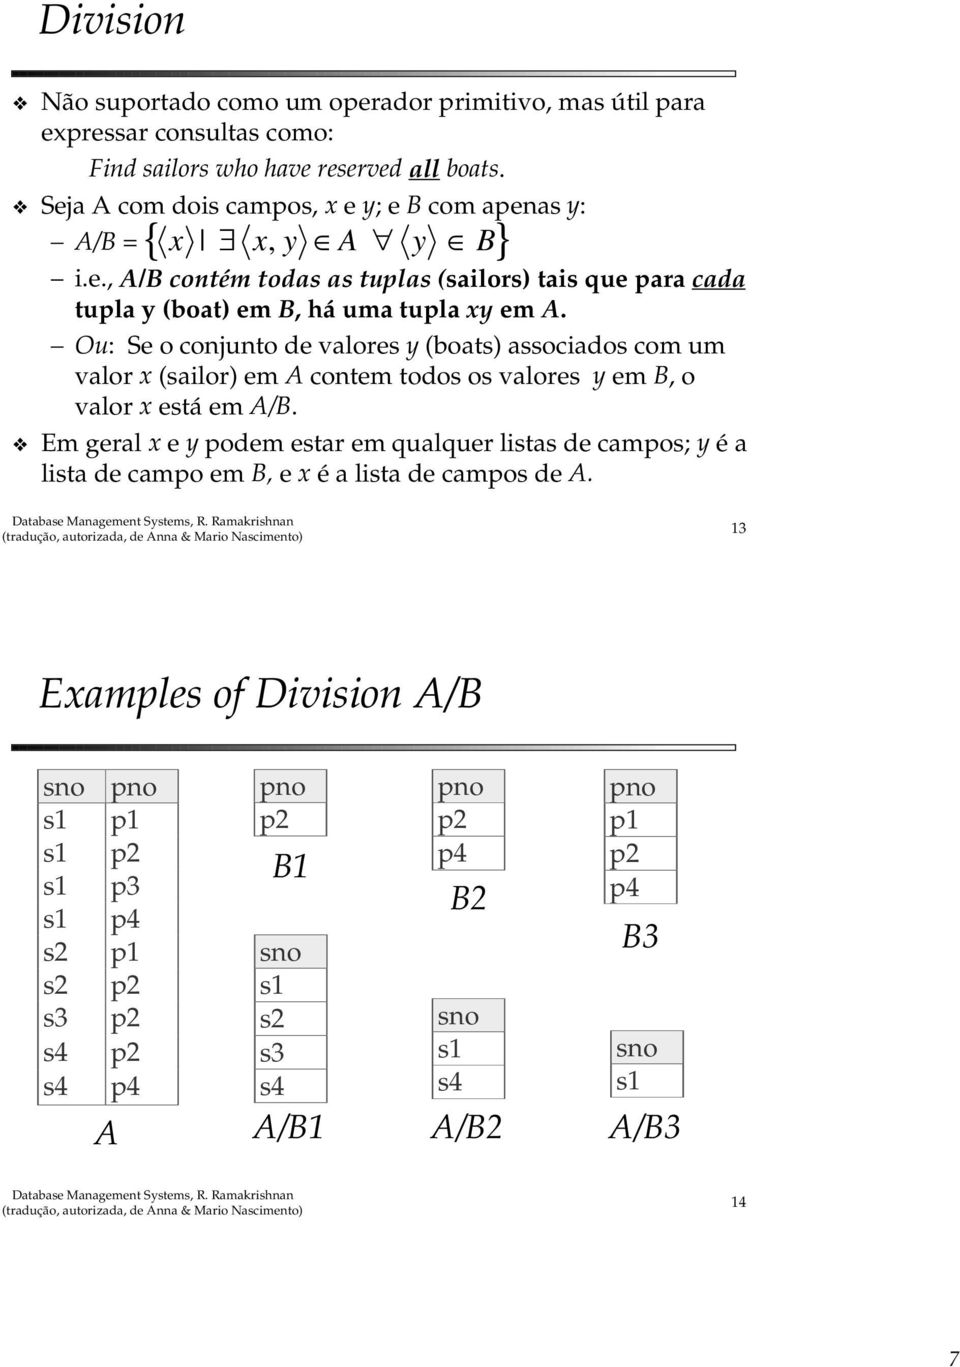 Ou: Se o conjunto de valores y (boats) associados com um valor x (sailor) em A contem todos os valores y em B, o valor x está em A/B.